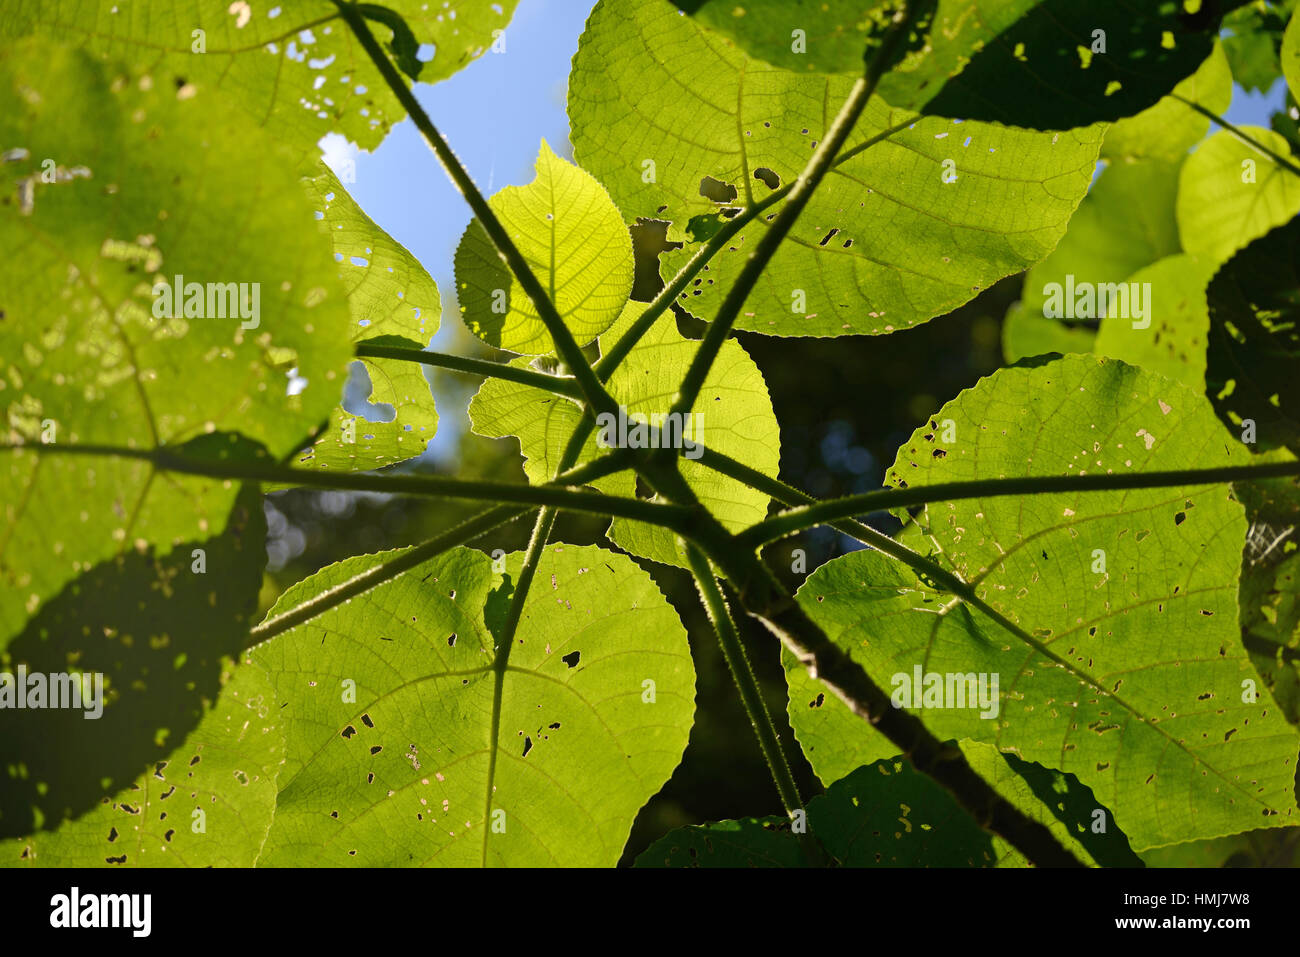 Hintergrundbeleuchtung auf Blätter des furchterregenden Riesen Baum, Dendrocnide Excelsa, auch als australische Brennnessel Baum, Fibrewood, Gimpi Gimpi stechen, Stockfoto